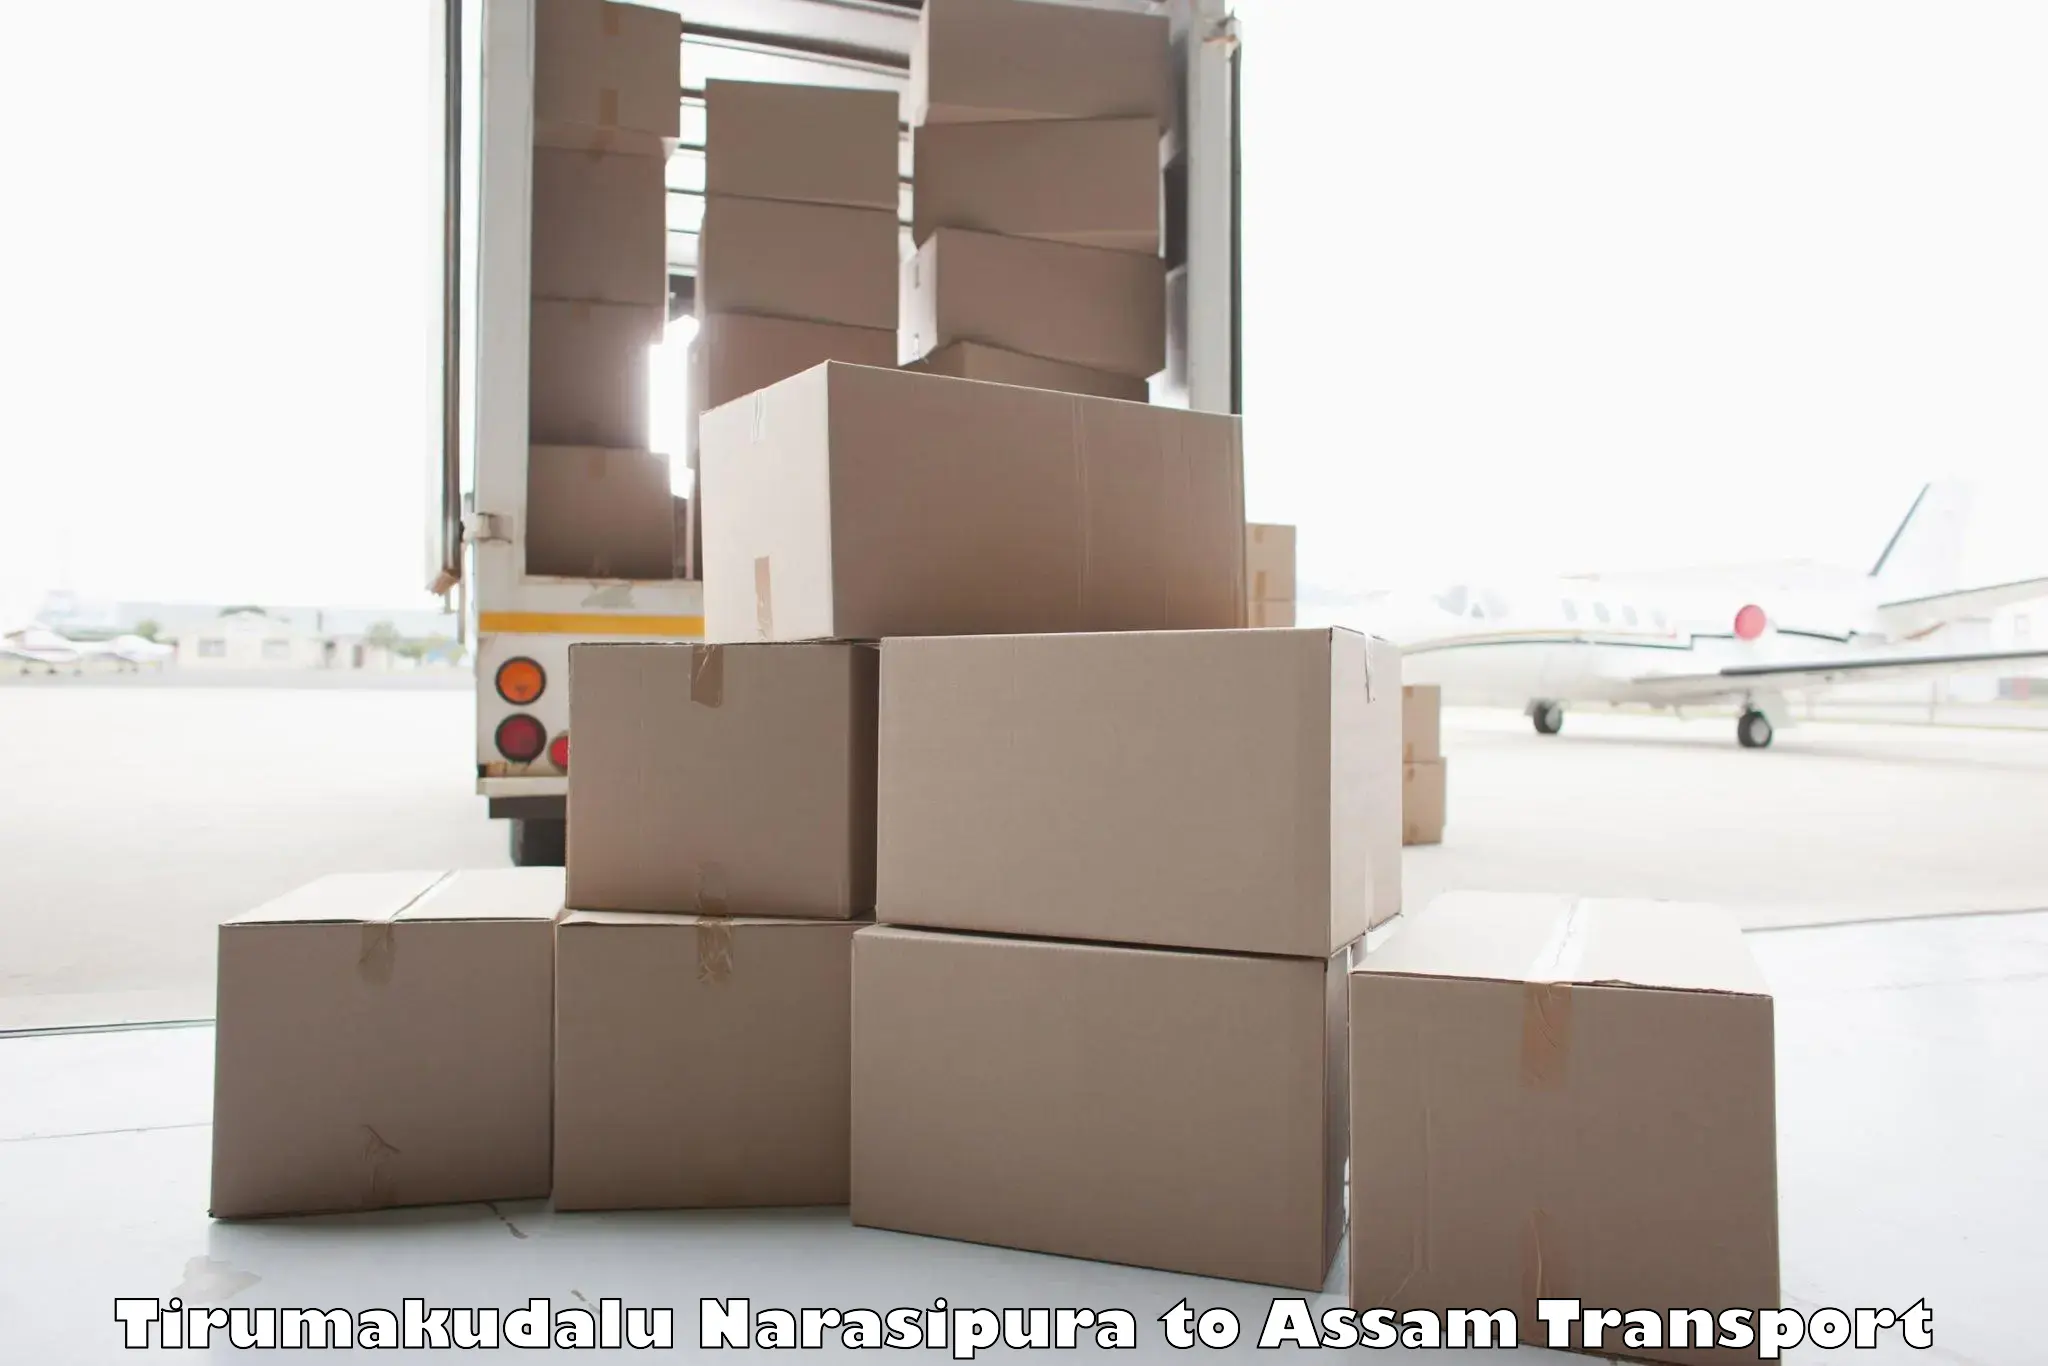 Luggage transport services Tirumakudalu Narasipura to Jamuguri